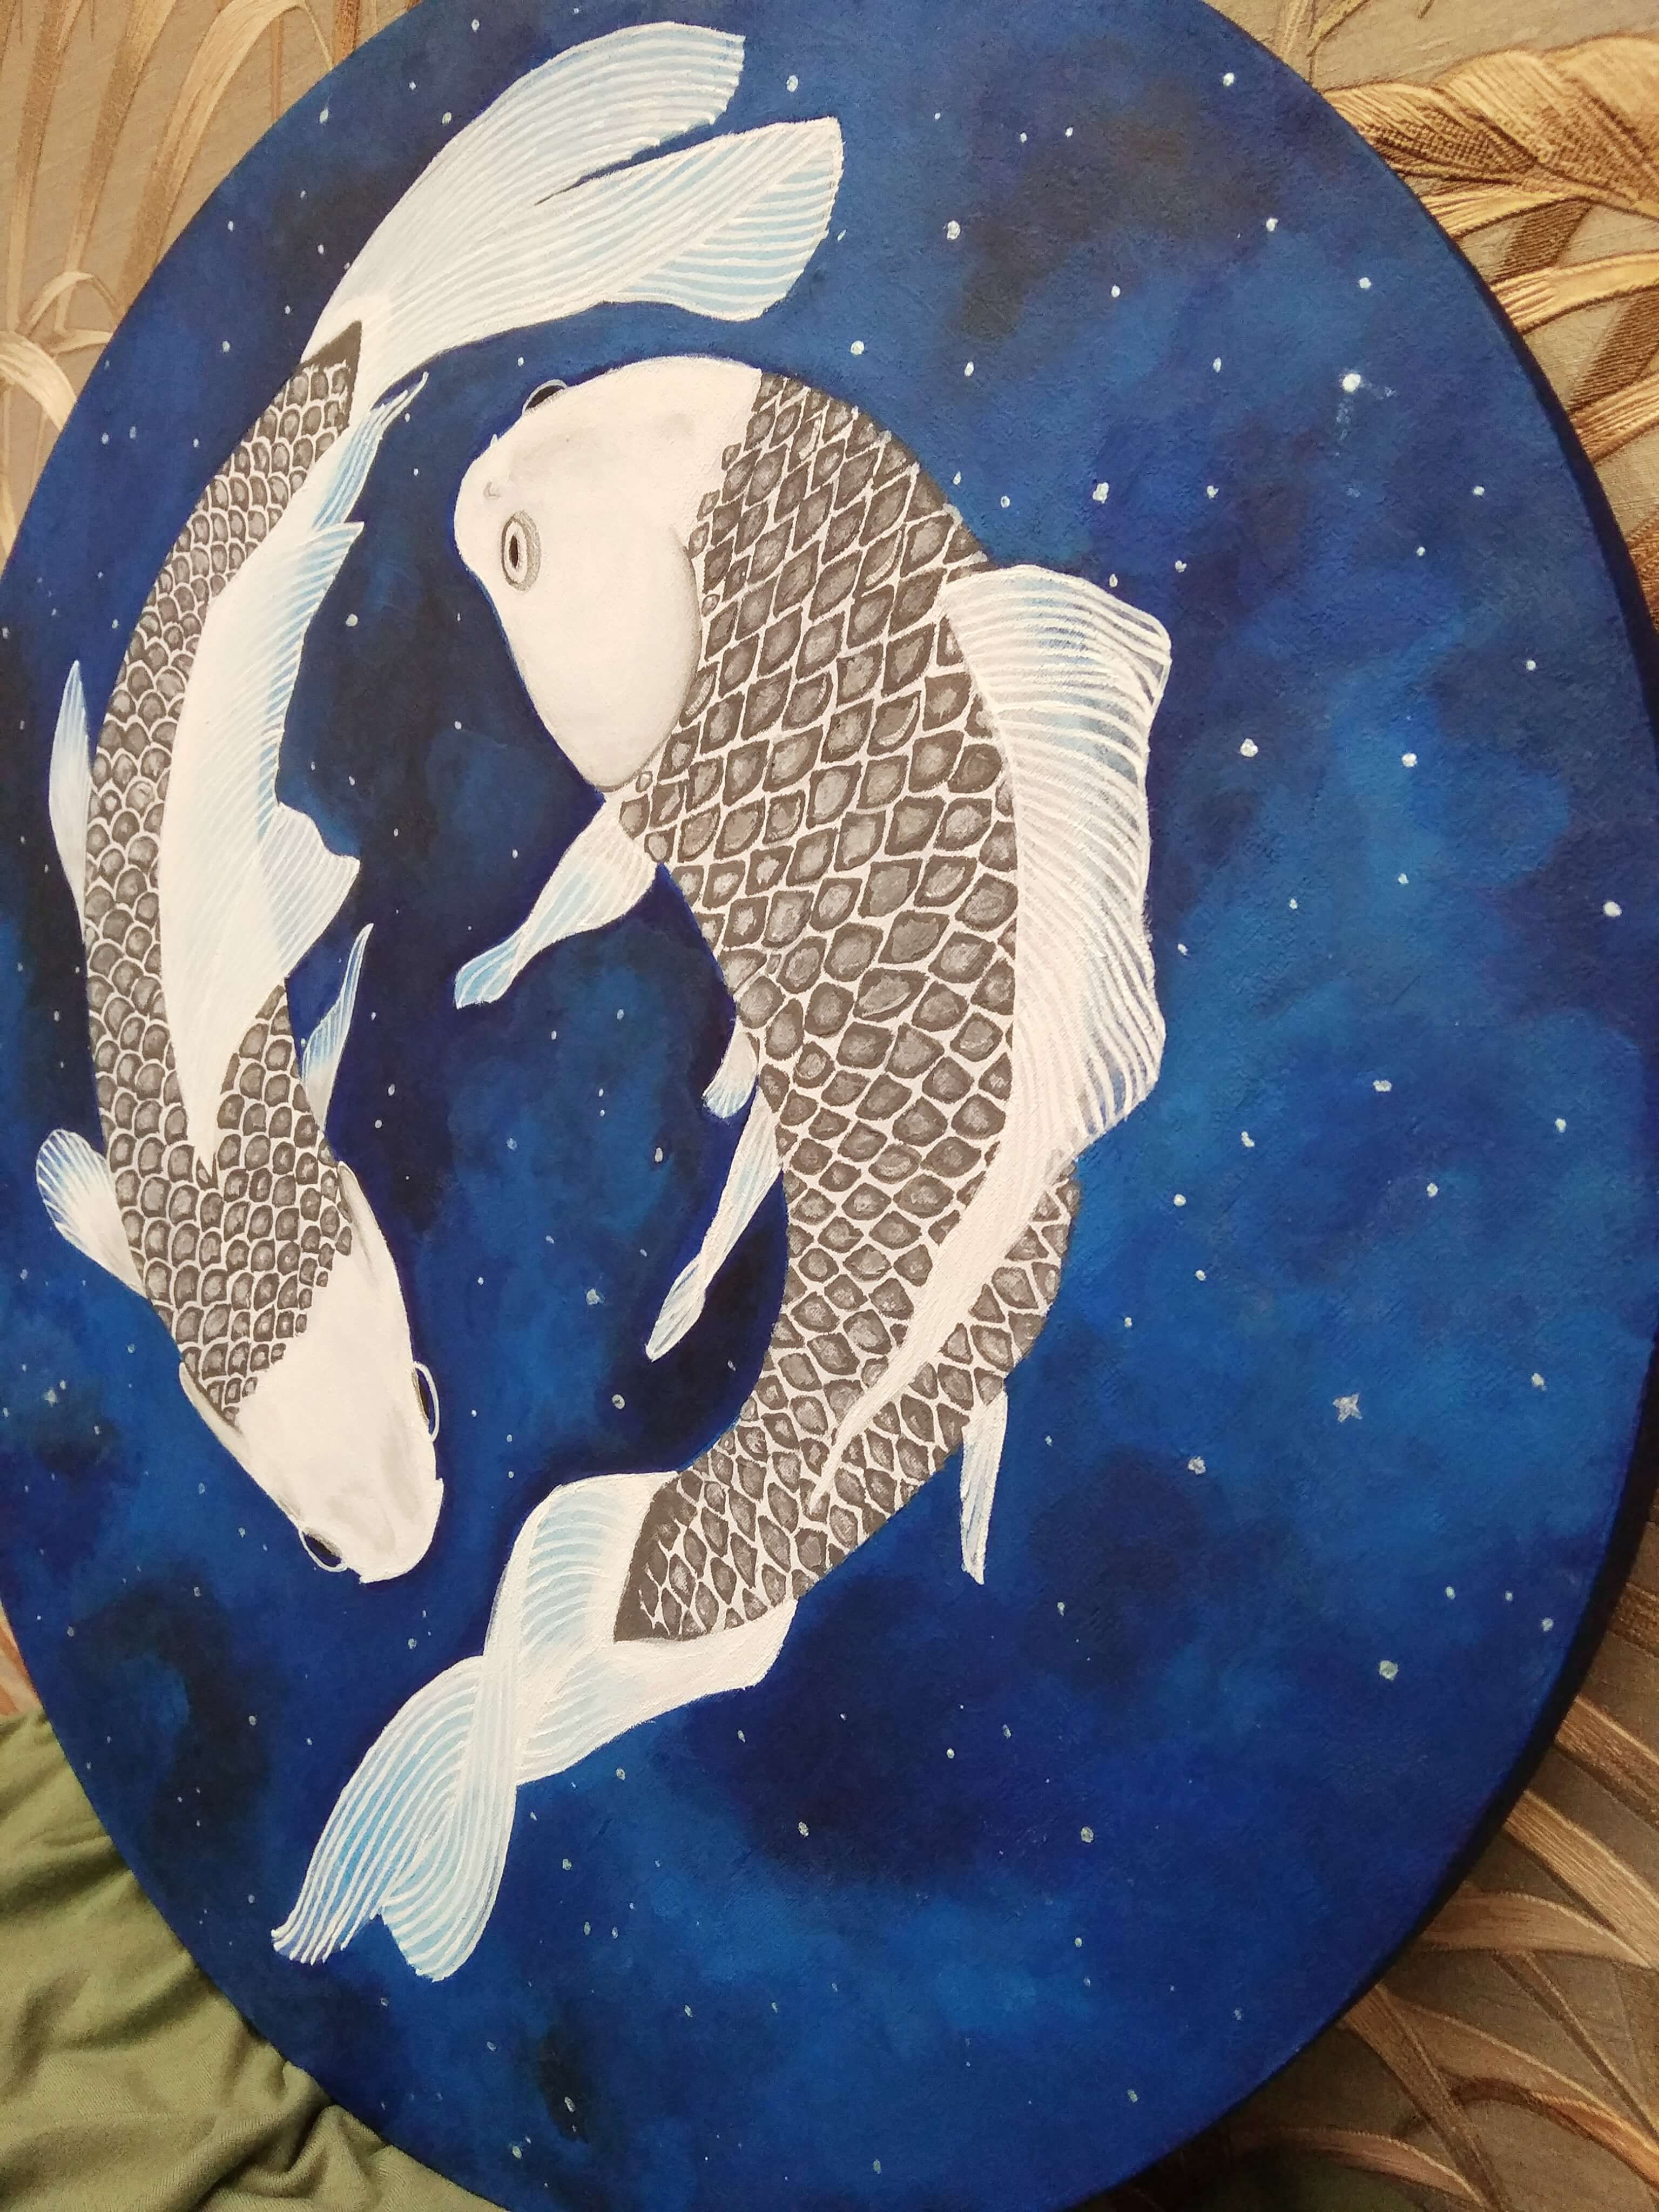 Картины, 3D-панно, панно из мха Зодиак: Рыбы_3 на сайте OboiVkus.by